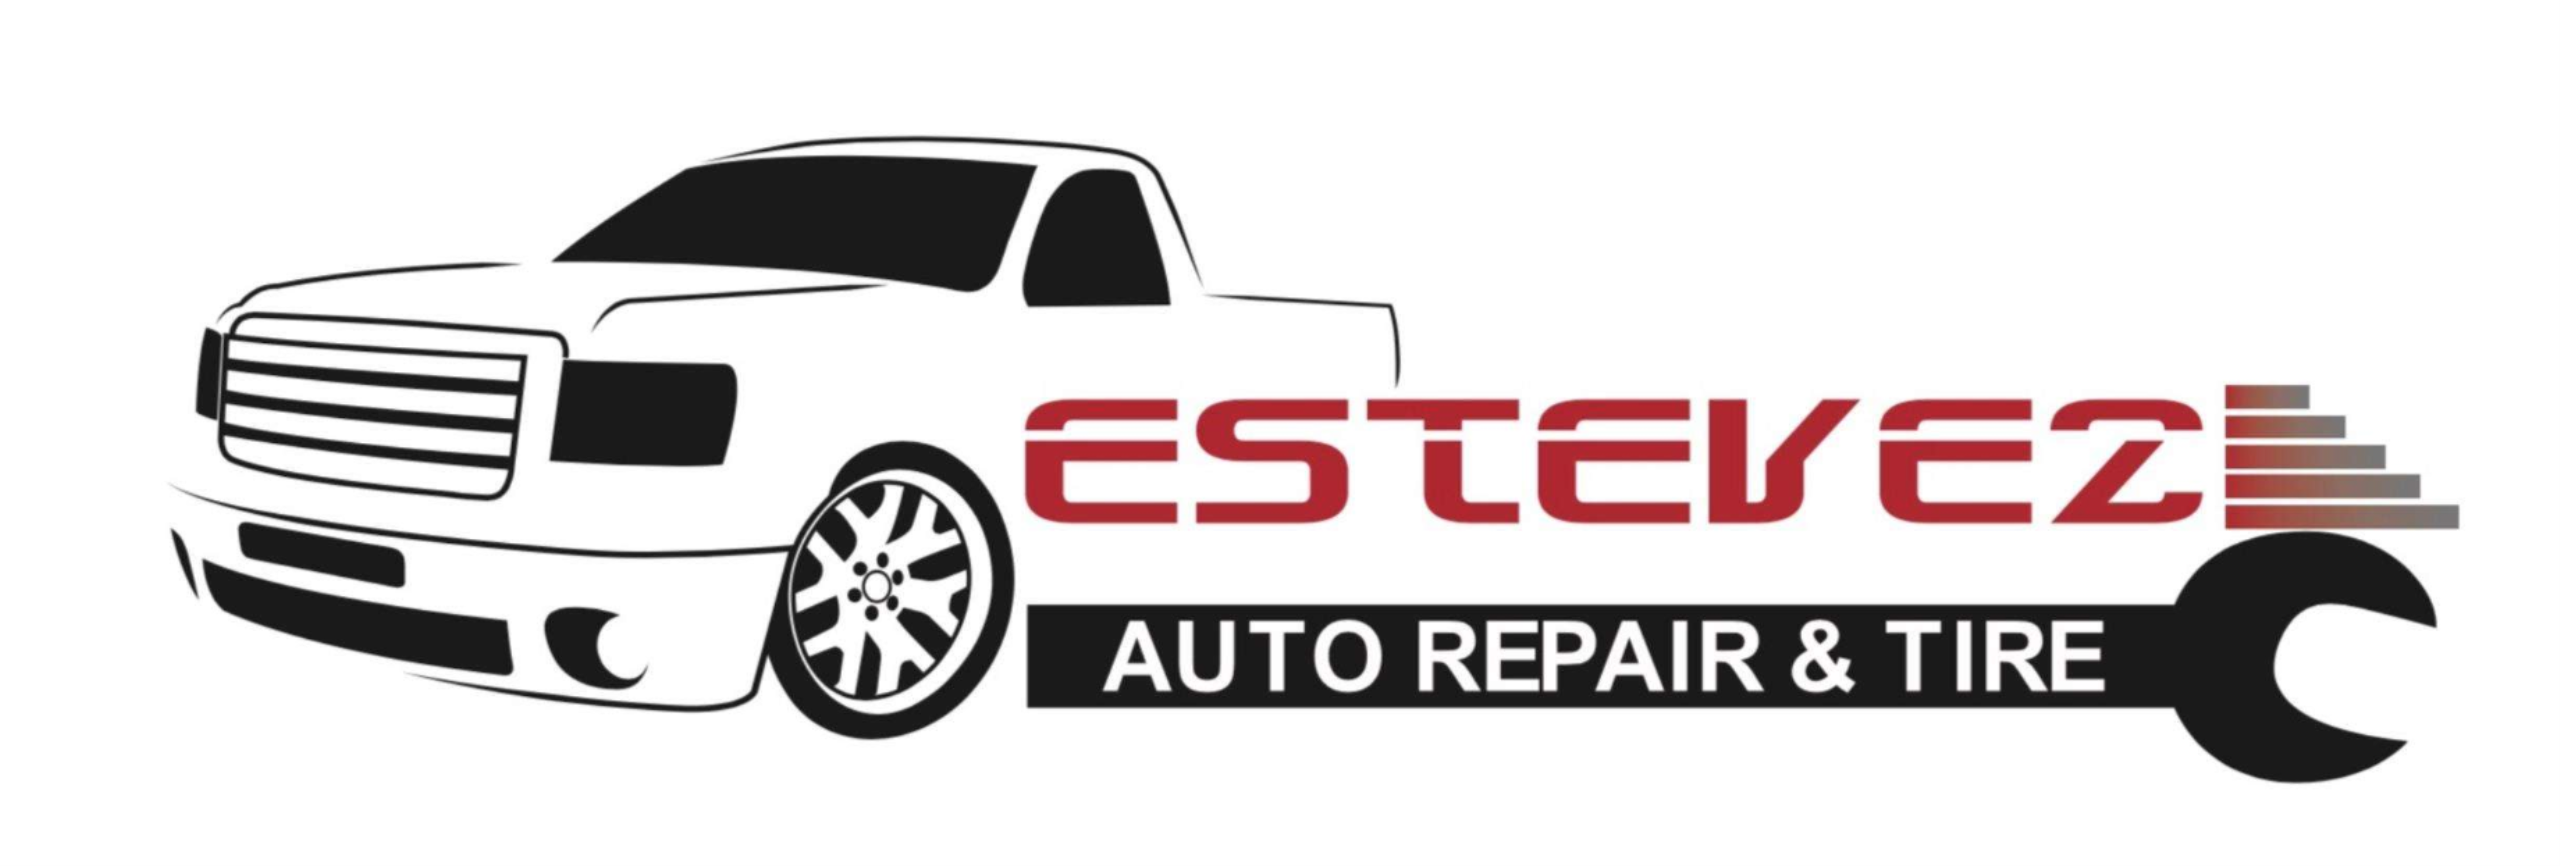 Estevez Auto Repair & Tire Logo